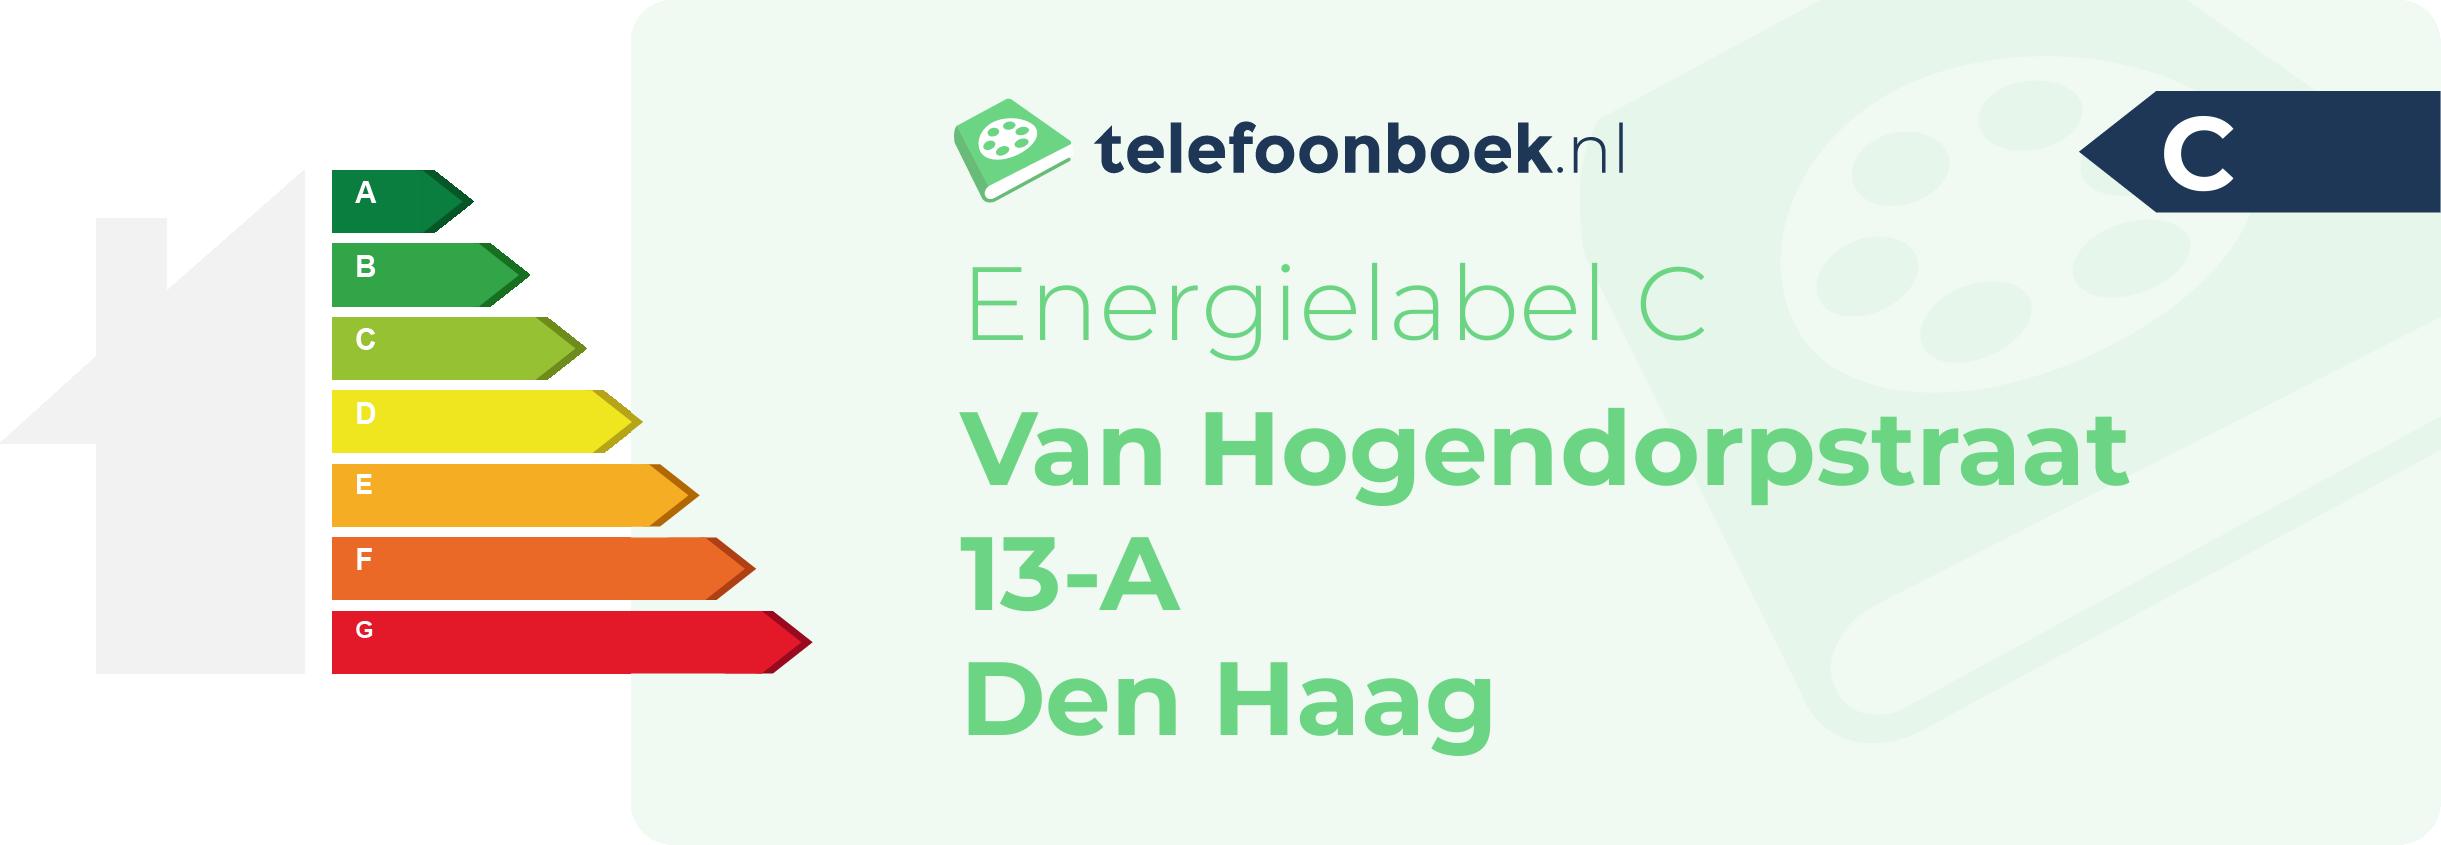 Energielabel Van Hogendorpstraat 13-A Den Haag